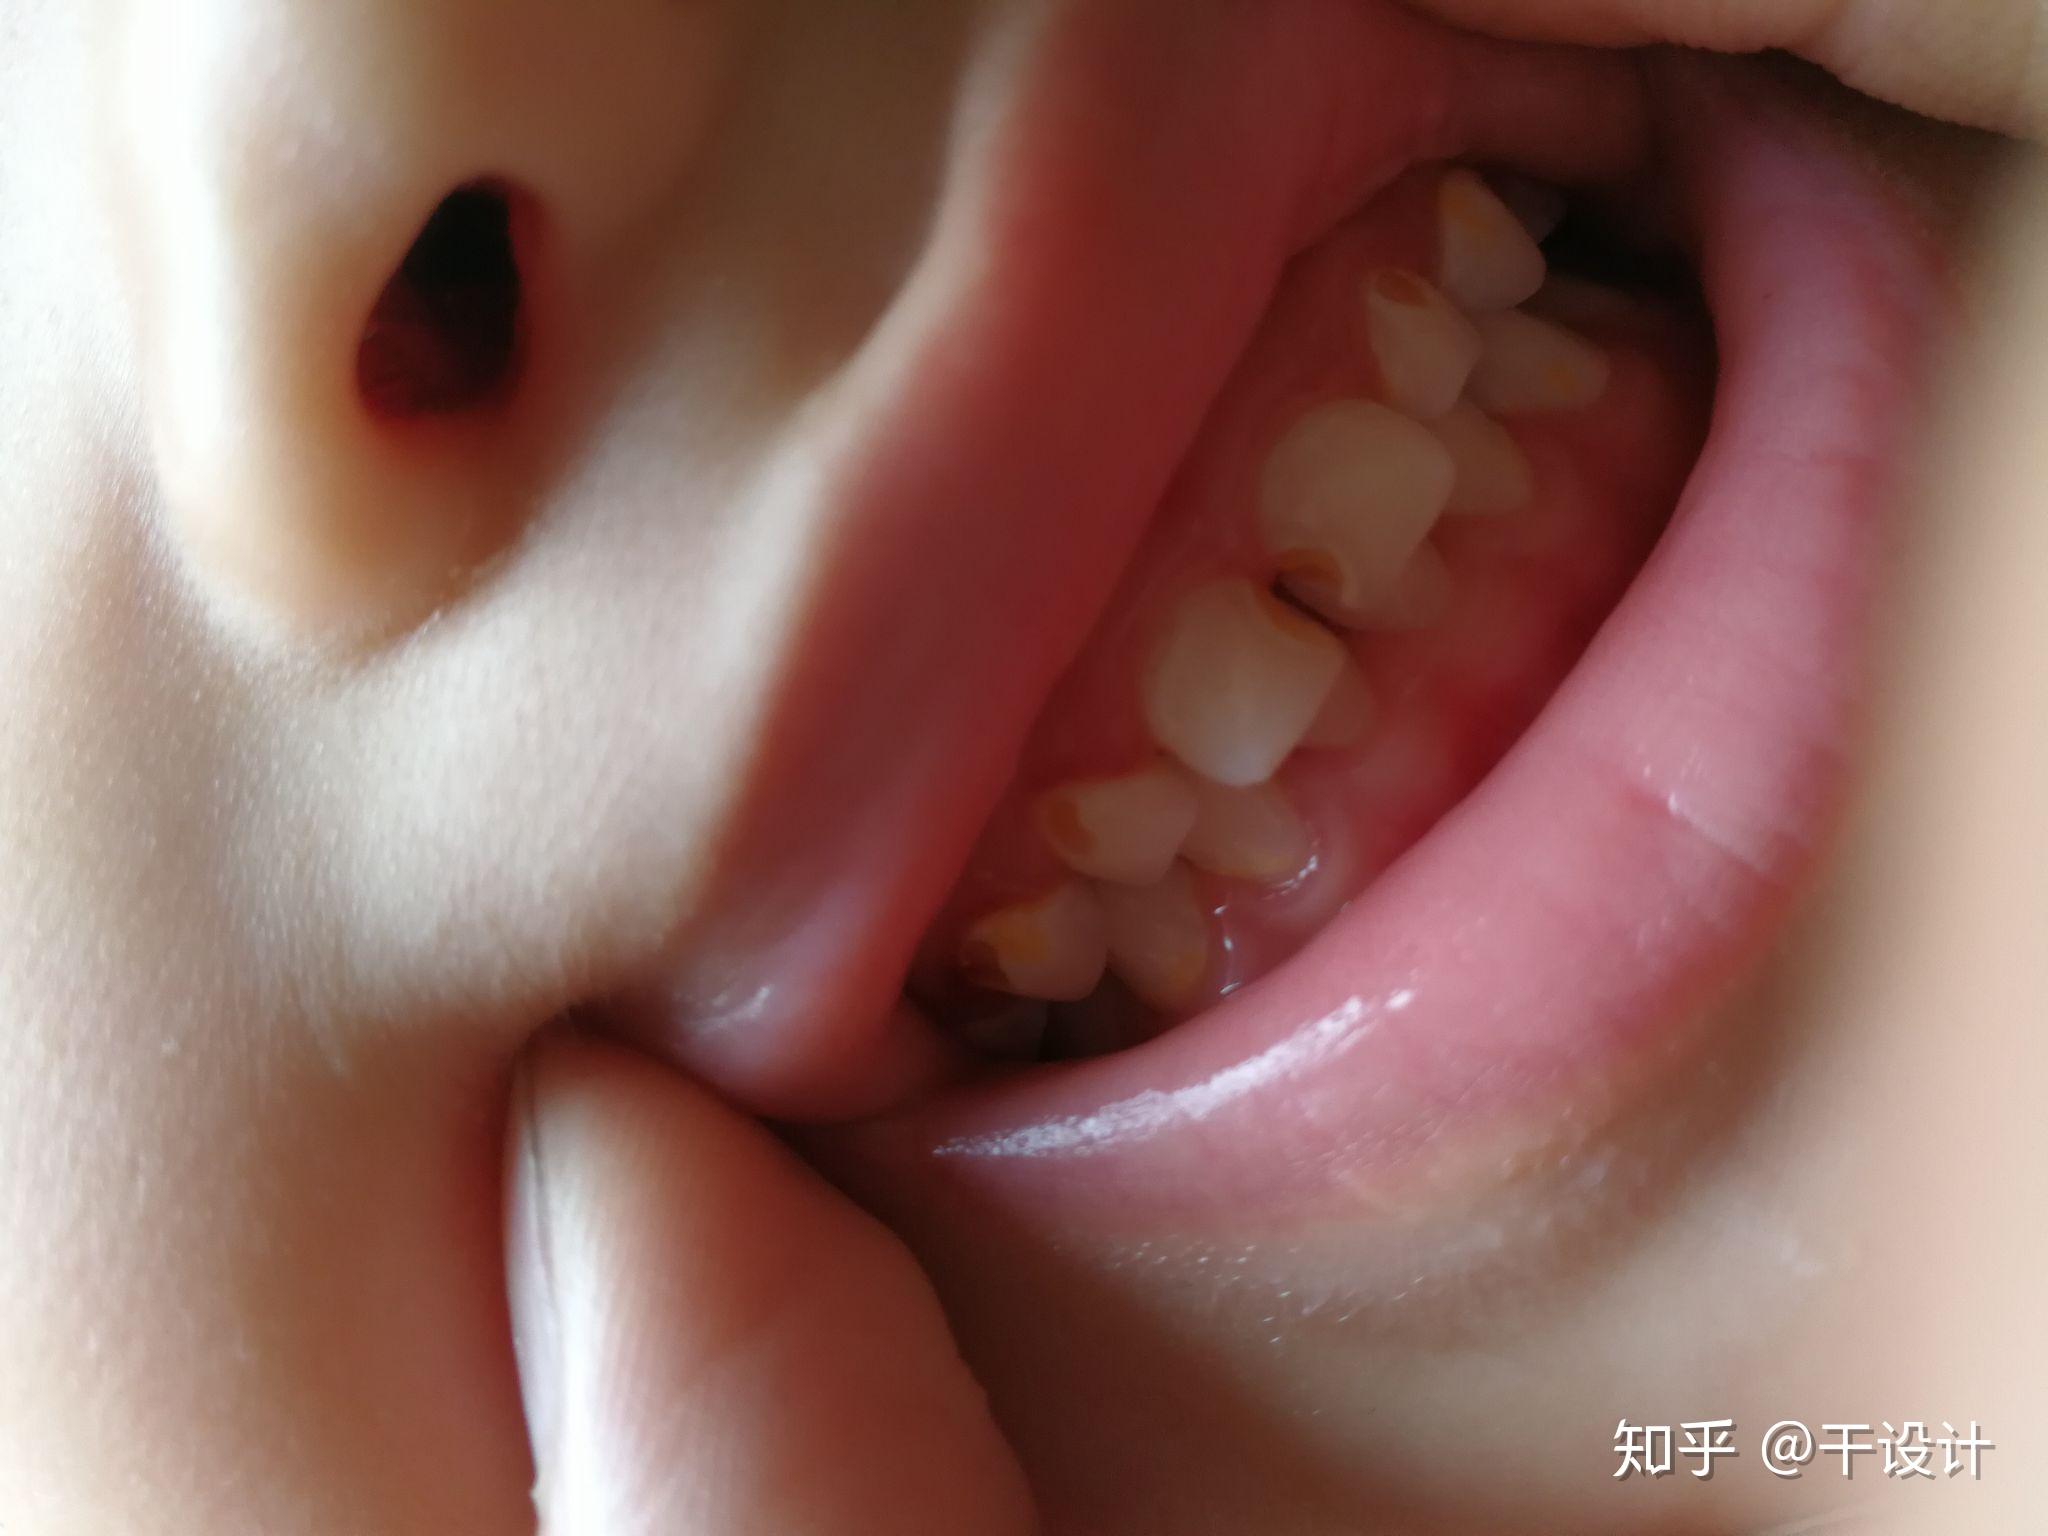 现在好多牙齿都有,现在才3岁半,比较担心,怕影响小孩身体发育和健康